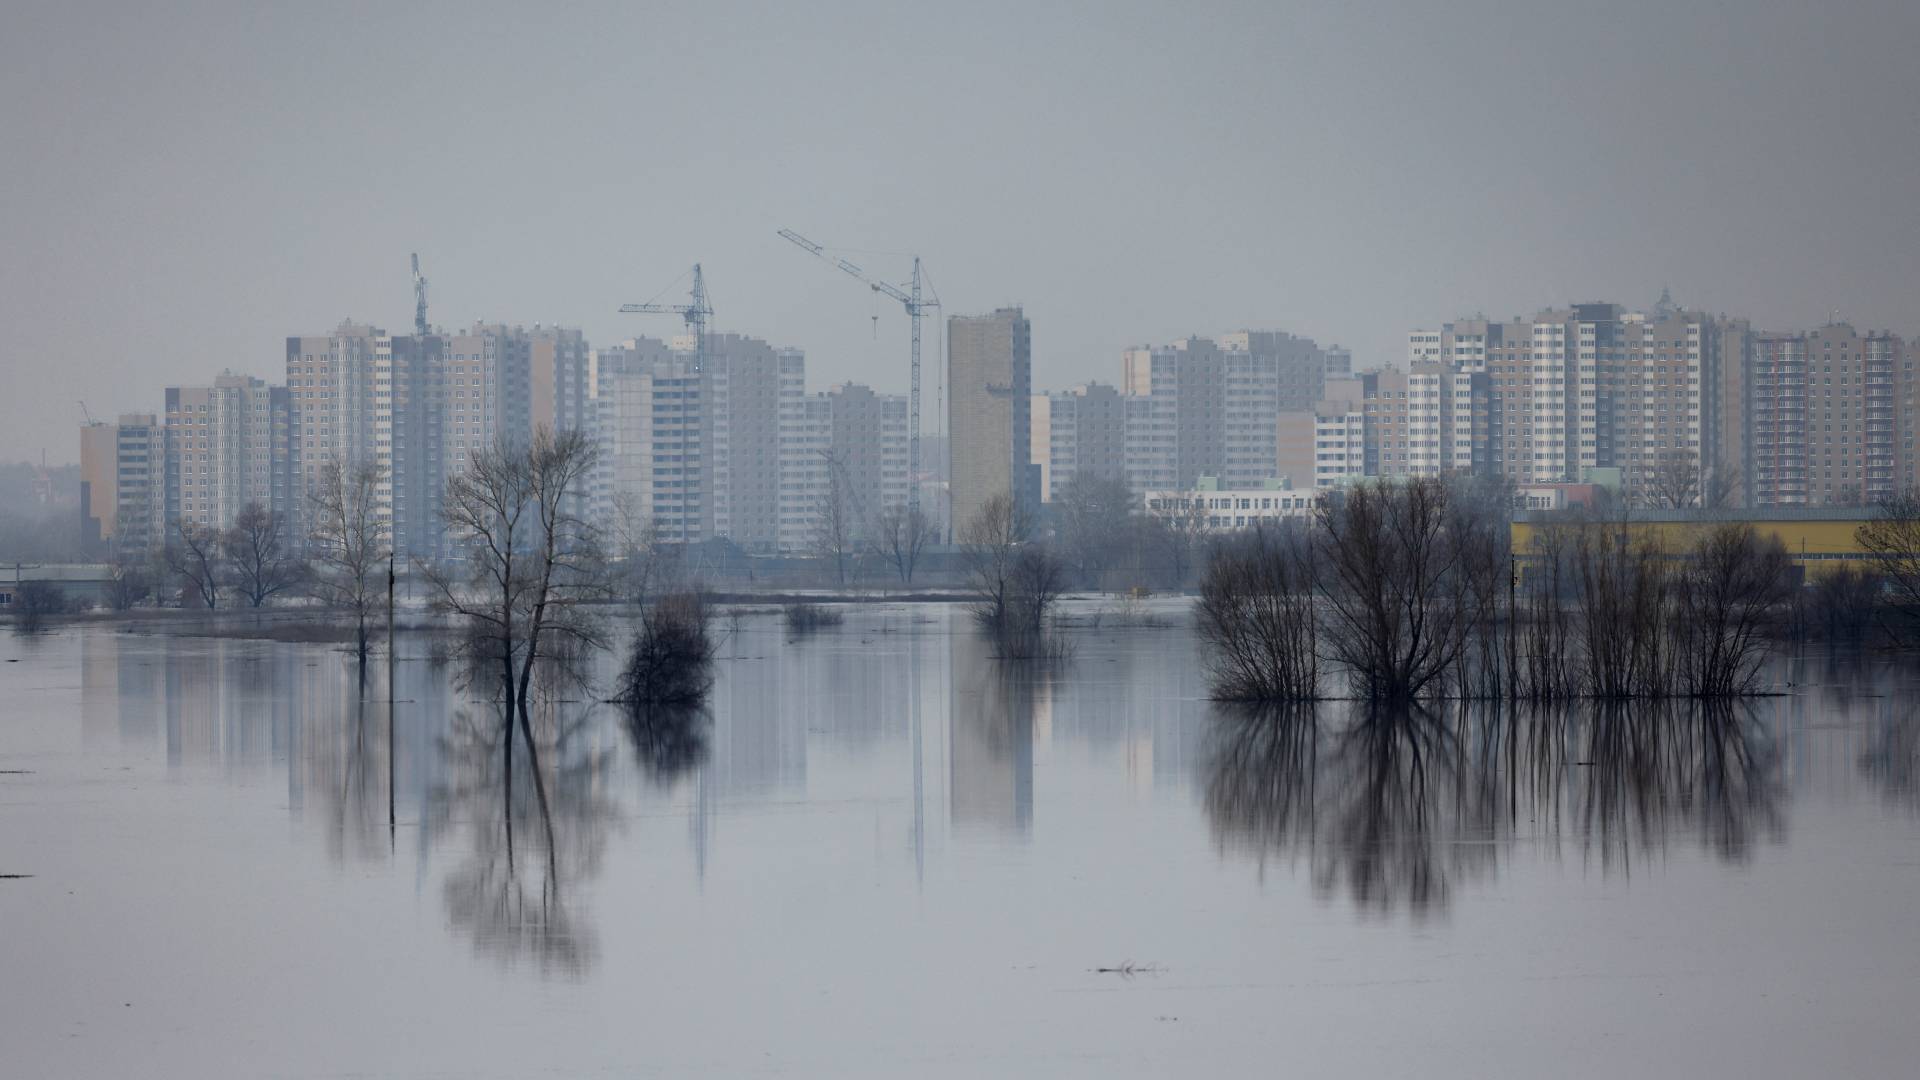 πλημμύρες σε ρωσία και καζακστάν: κάτω από το νερό ολόκληρες περιοχές – ανεβαίνει κι άλλο η στάθμη των ποταμών